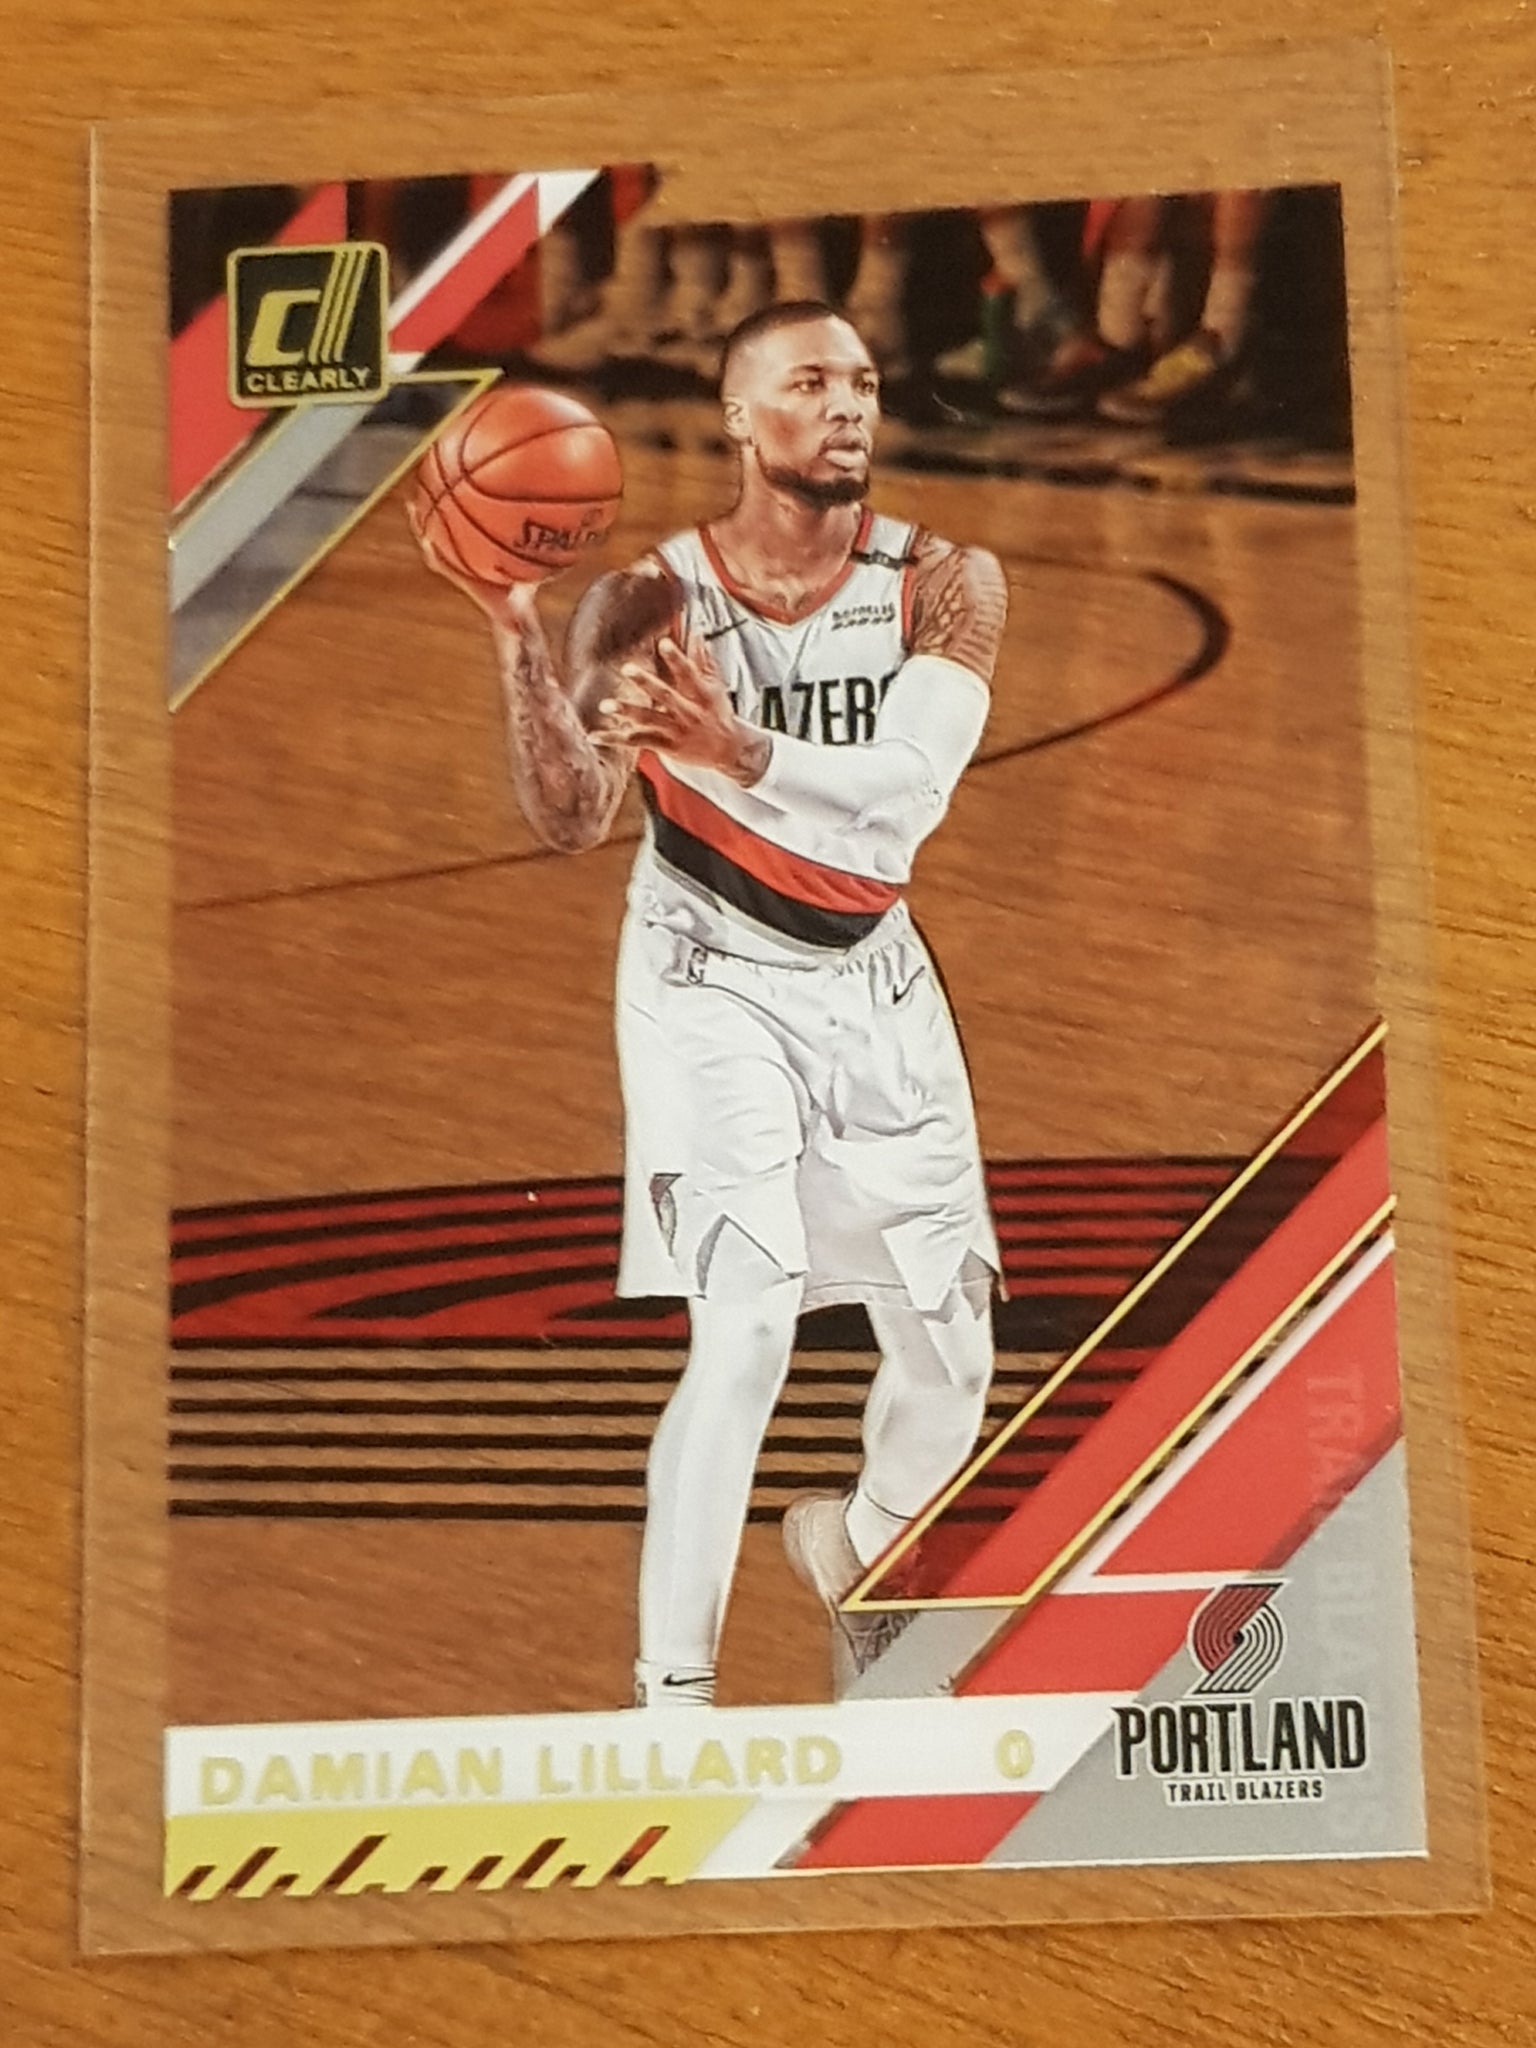 2020-21 Panini Clearly Donruss Basketball Damian Lillard #20 Trading Card